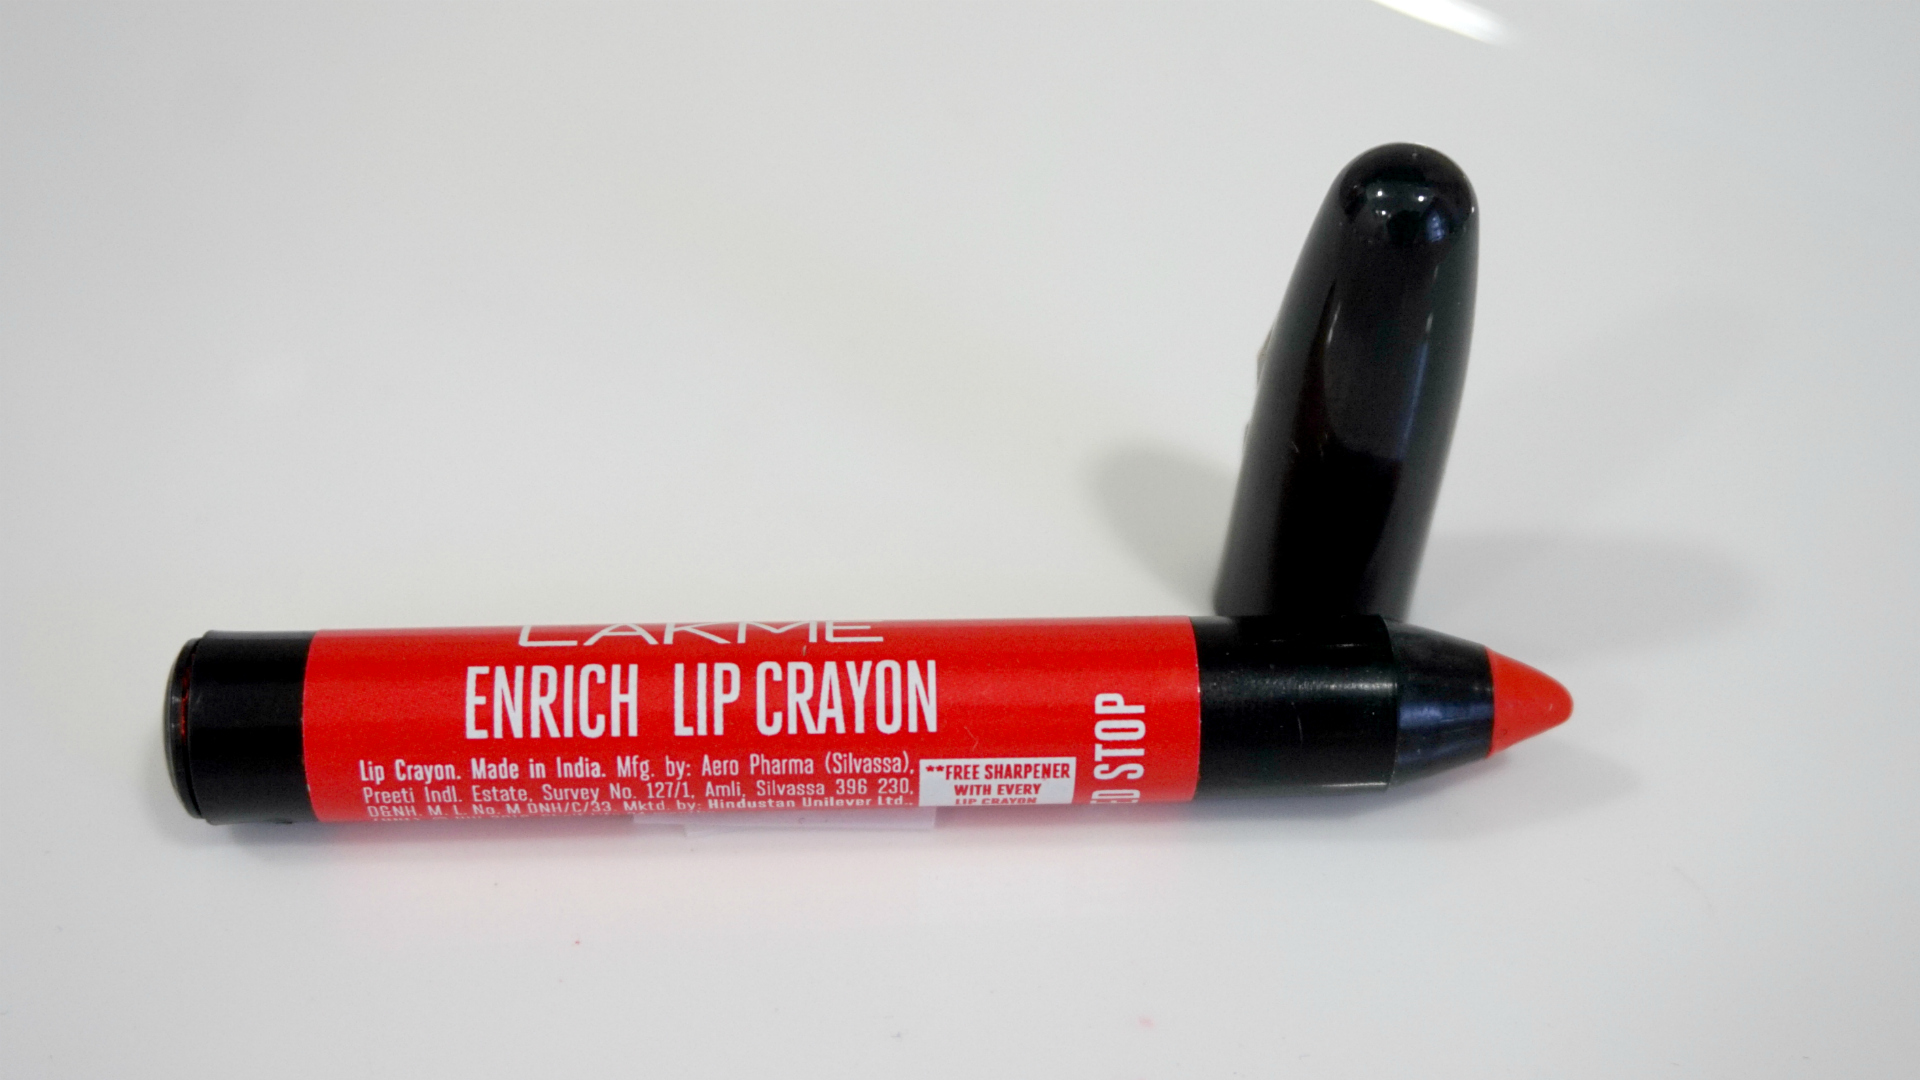 Lakme Enrich Lip Crayons Review